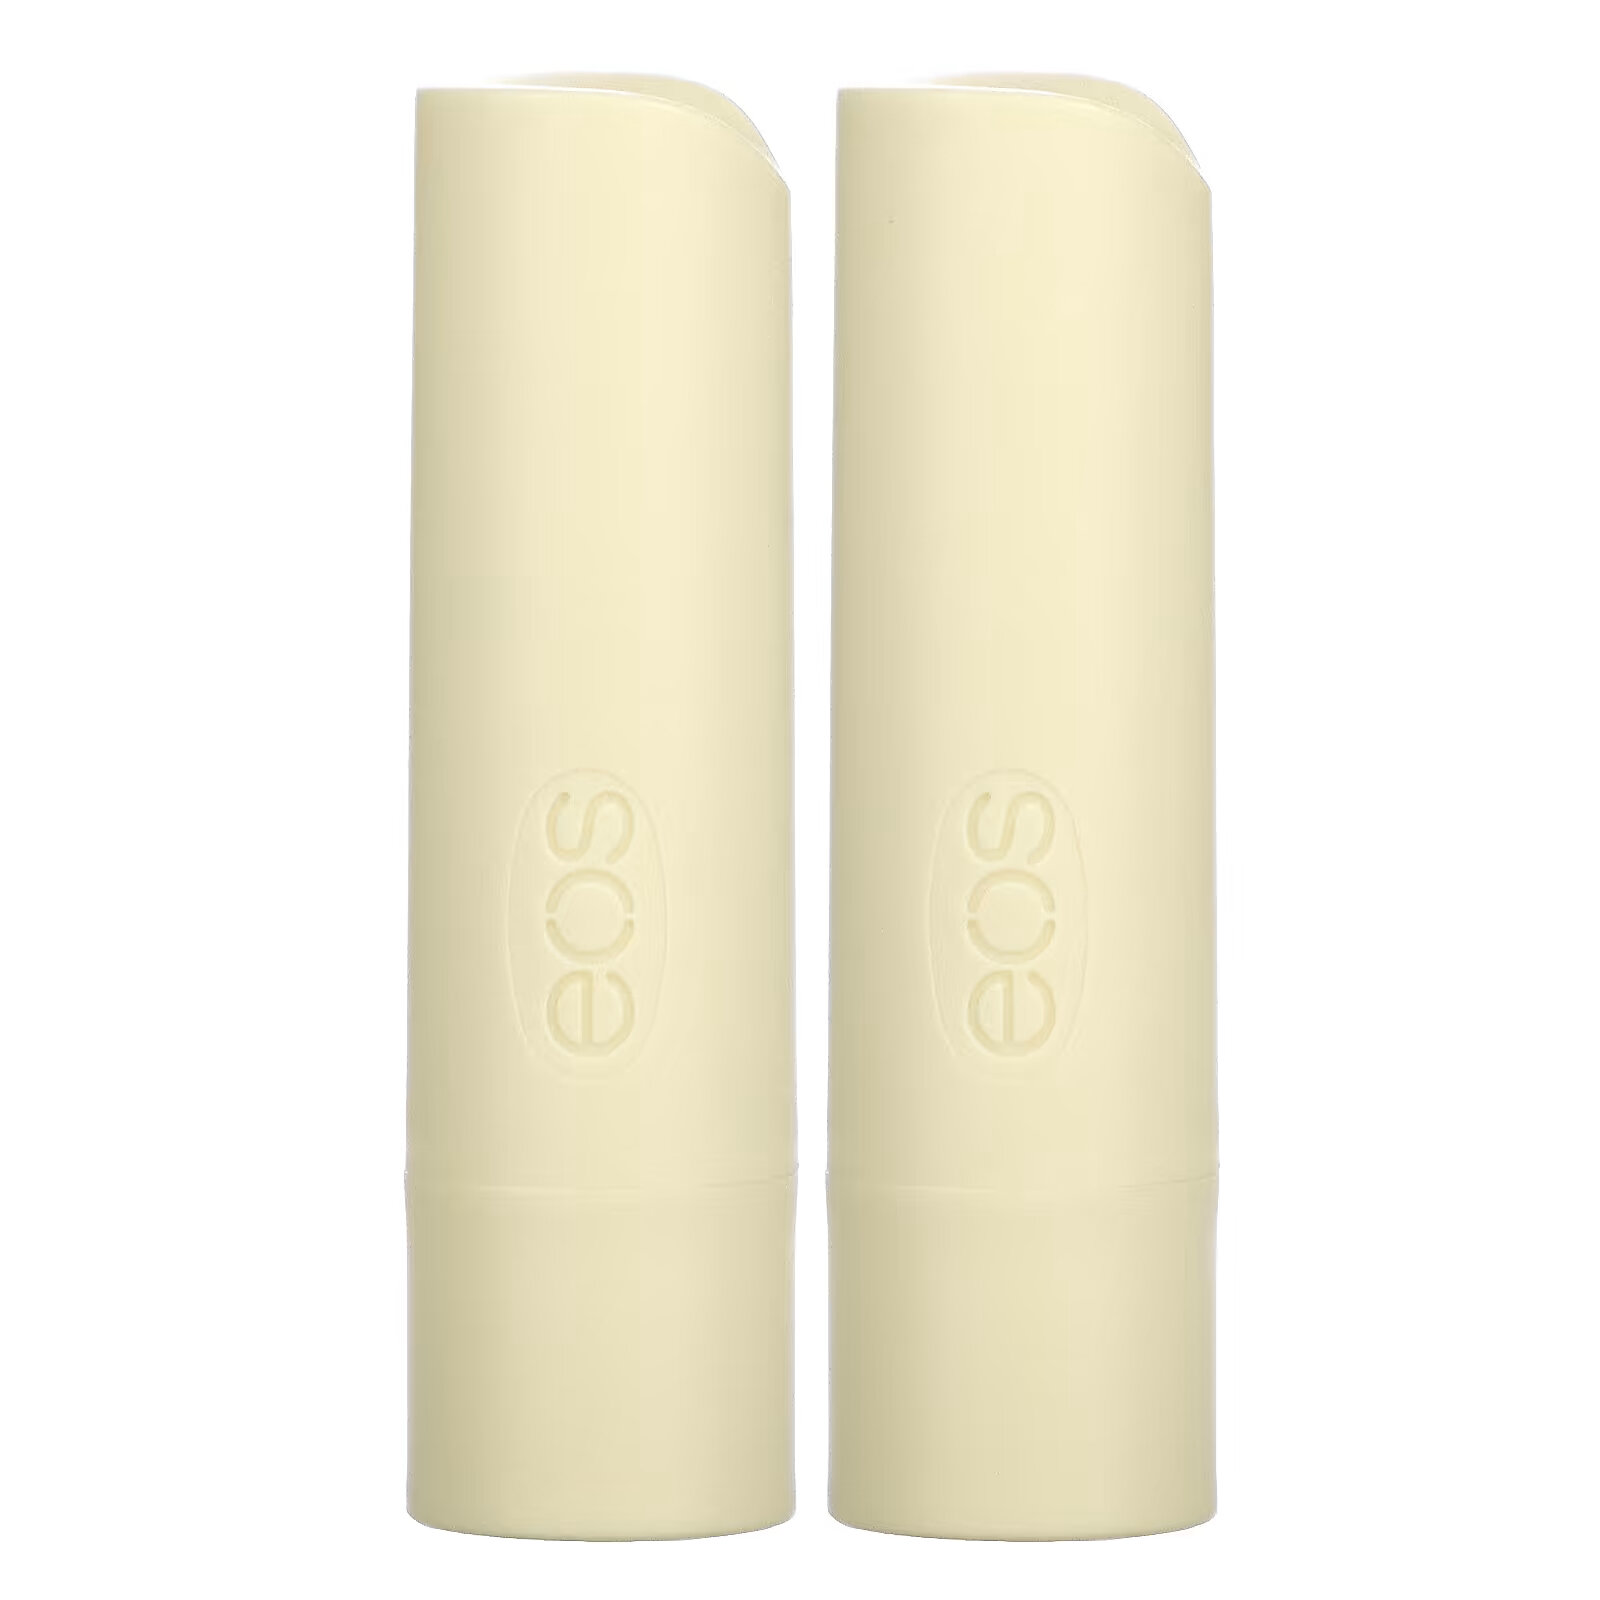 EOS, 100% органический натуральный бальзам для губ с ши, ванильные бобы, 2 шт. в упаковке, 4 г (0,14 унции) eos 100% органический натуральный бальзам для губ с ши ванильные бобы 2 шт в упаковке 4 г 0 14 унции